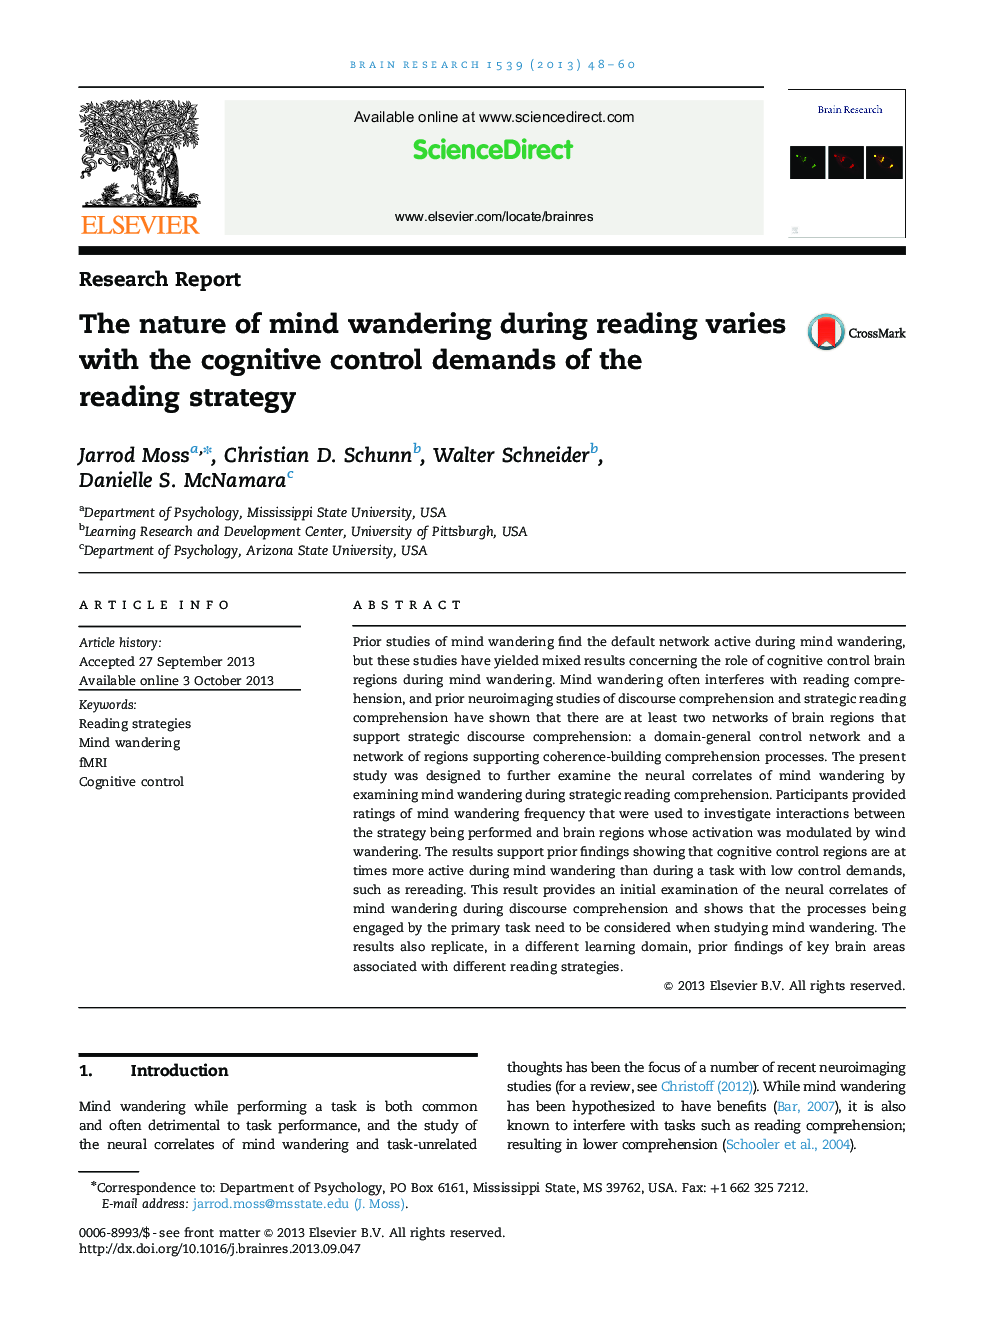 گزارش تحقیق ماهیت ذهن سرگردان در طول خواندن متفاوت با خواسته های کنترل شناختی از استراتژی خواندن است 